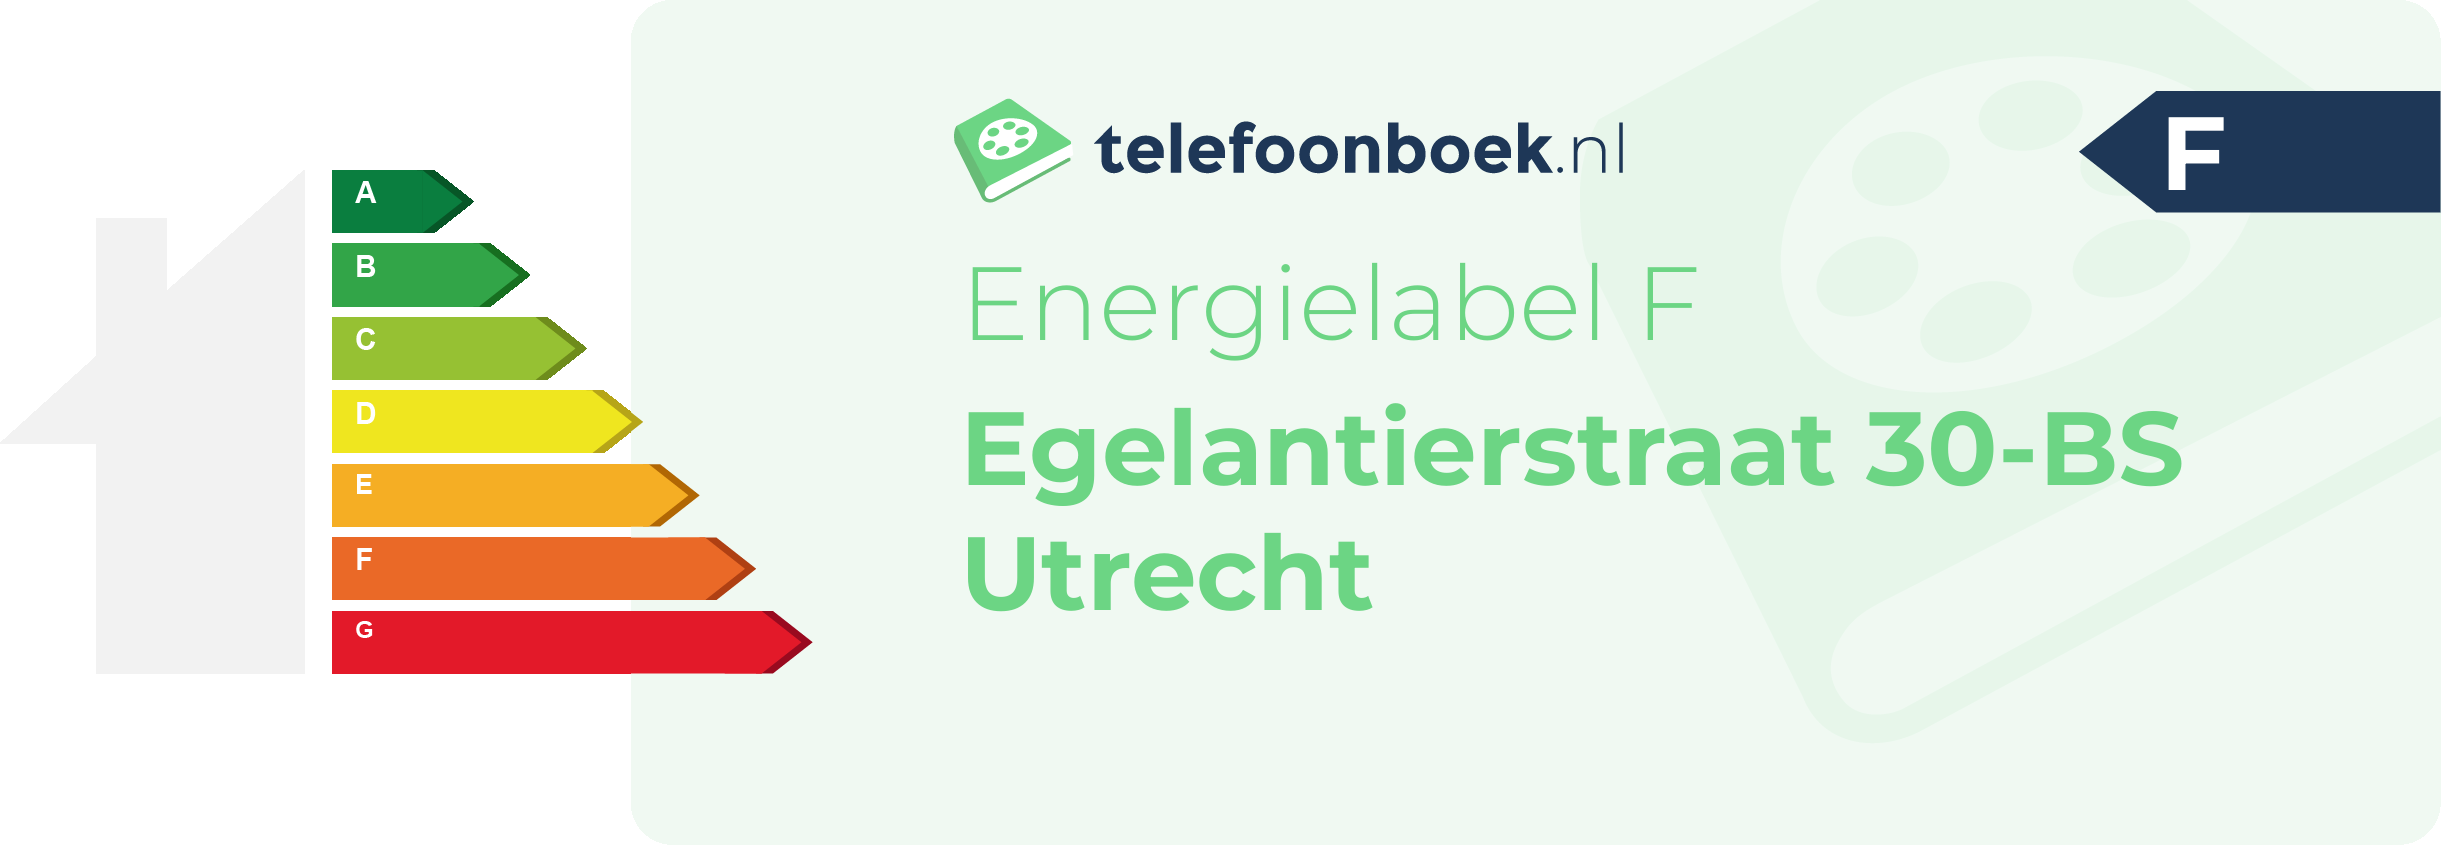 Energielabel Egelantierstraat 30-BS Utrecht